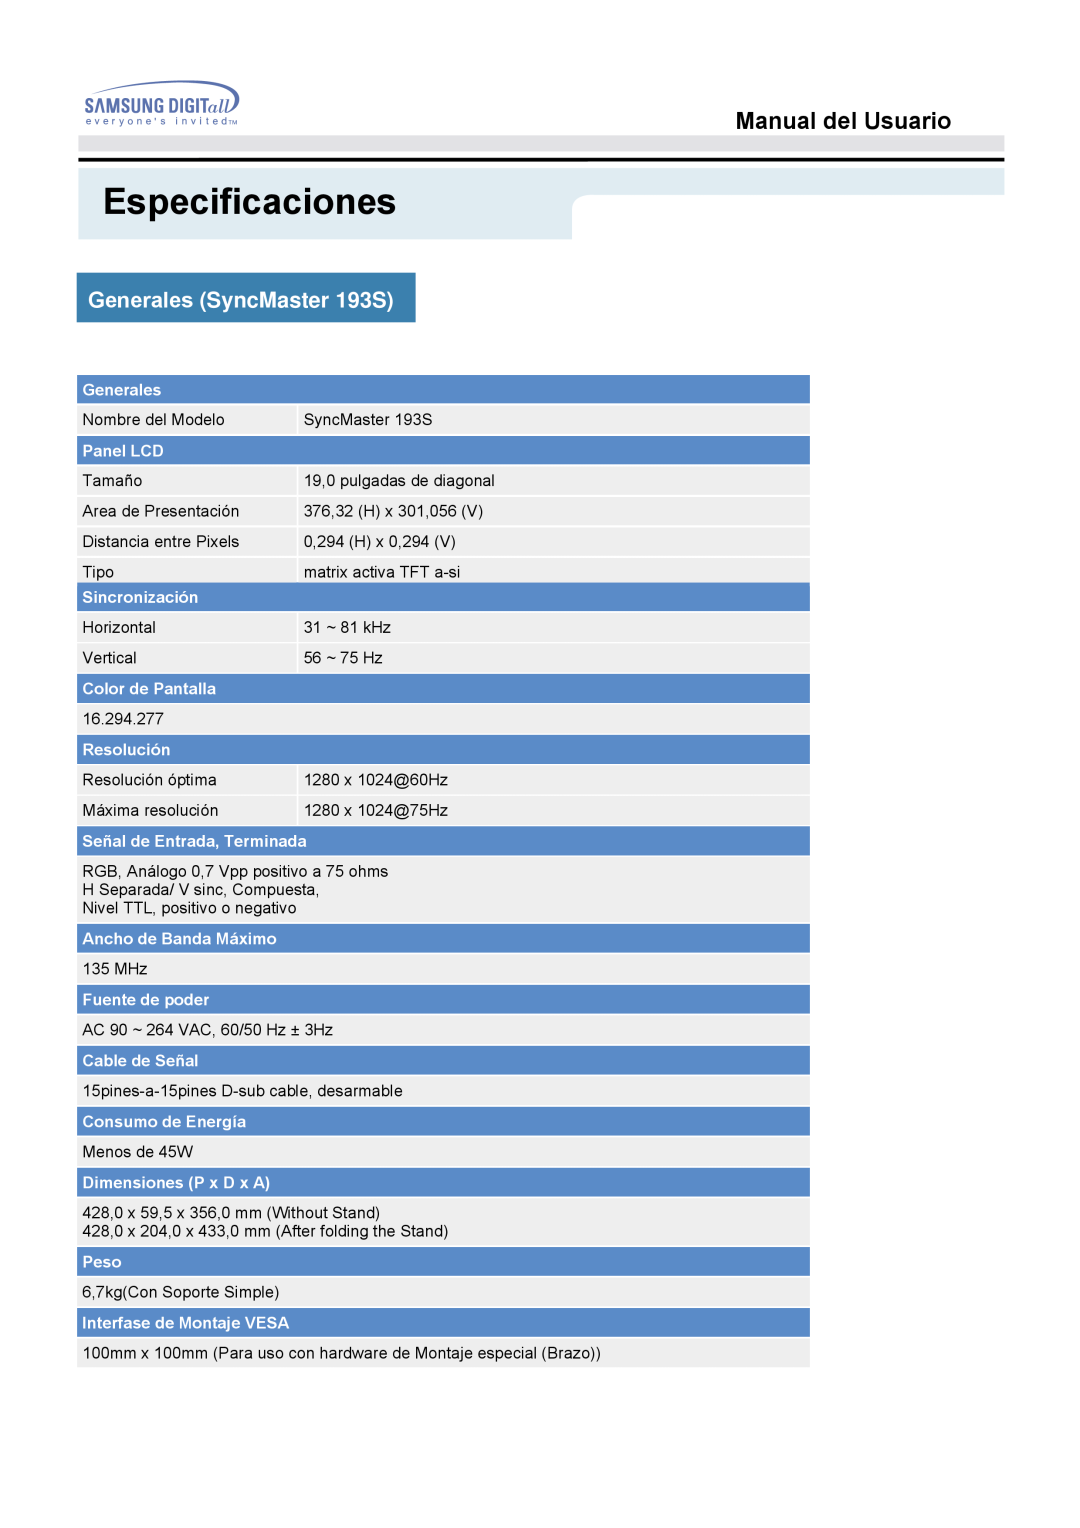 Samsung 153S manual Generales SyncMaster 193S, Especificaciones, Manual del Usuario 